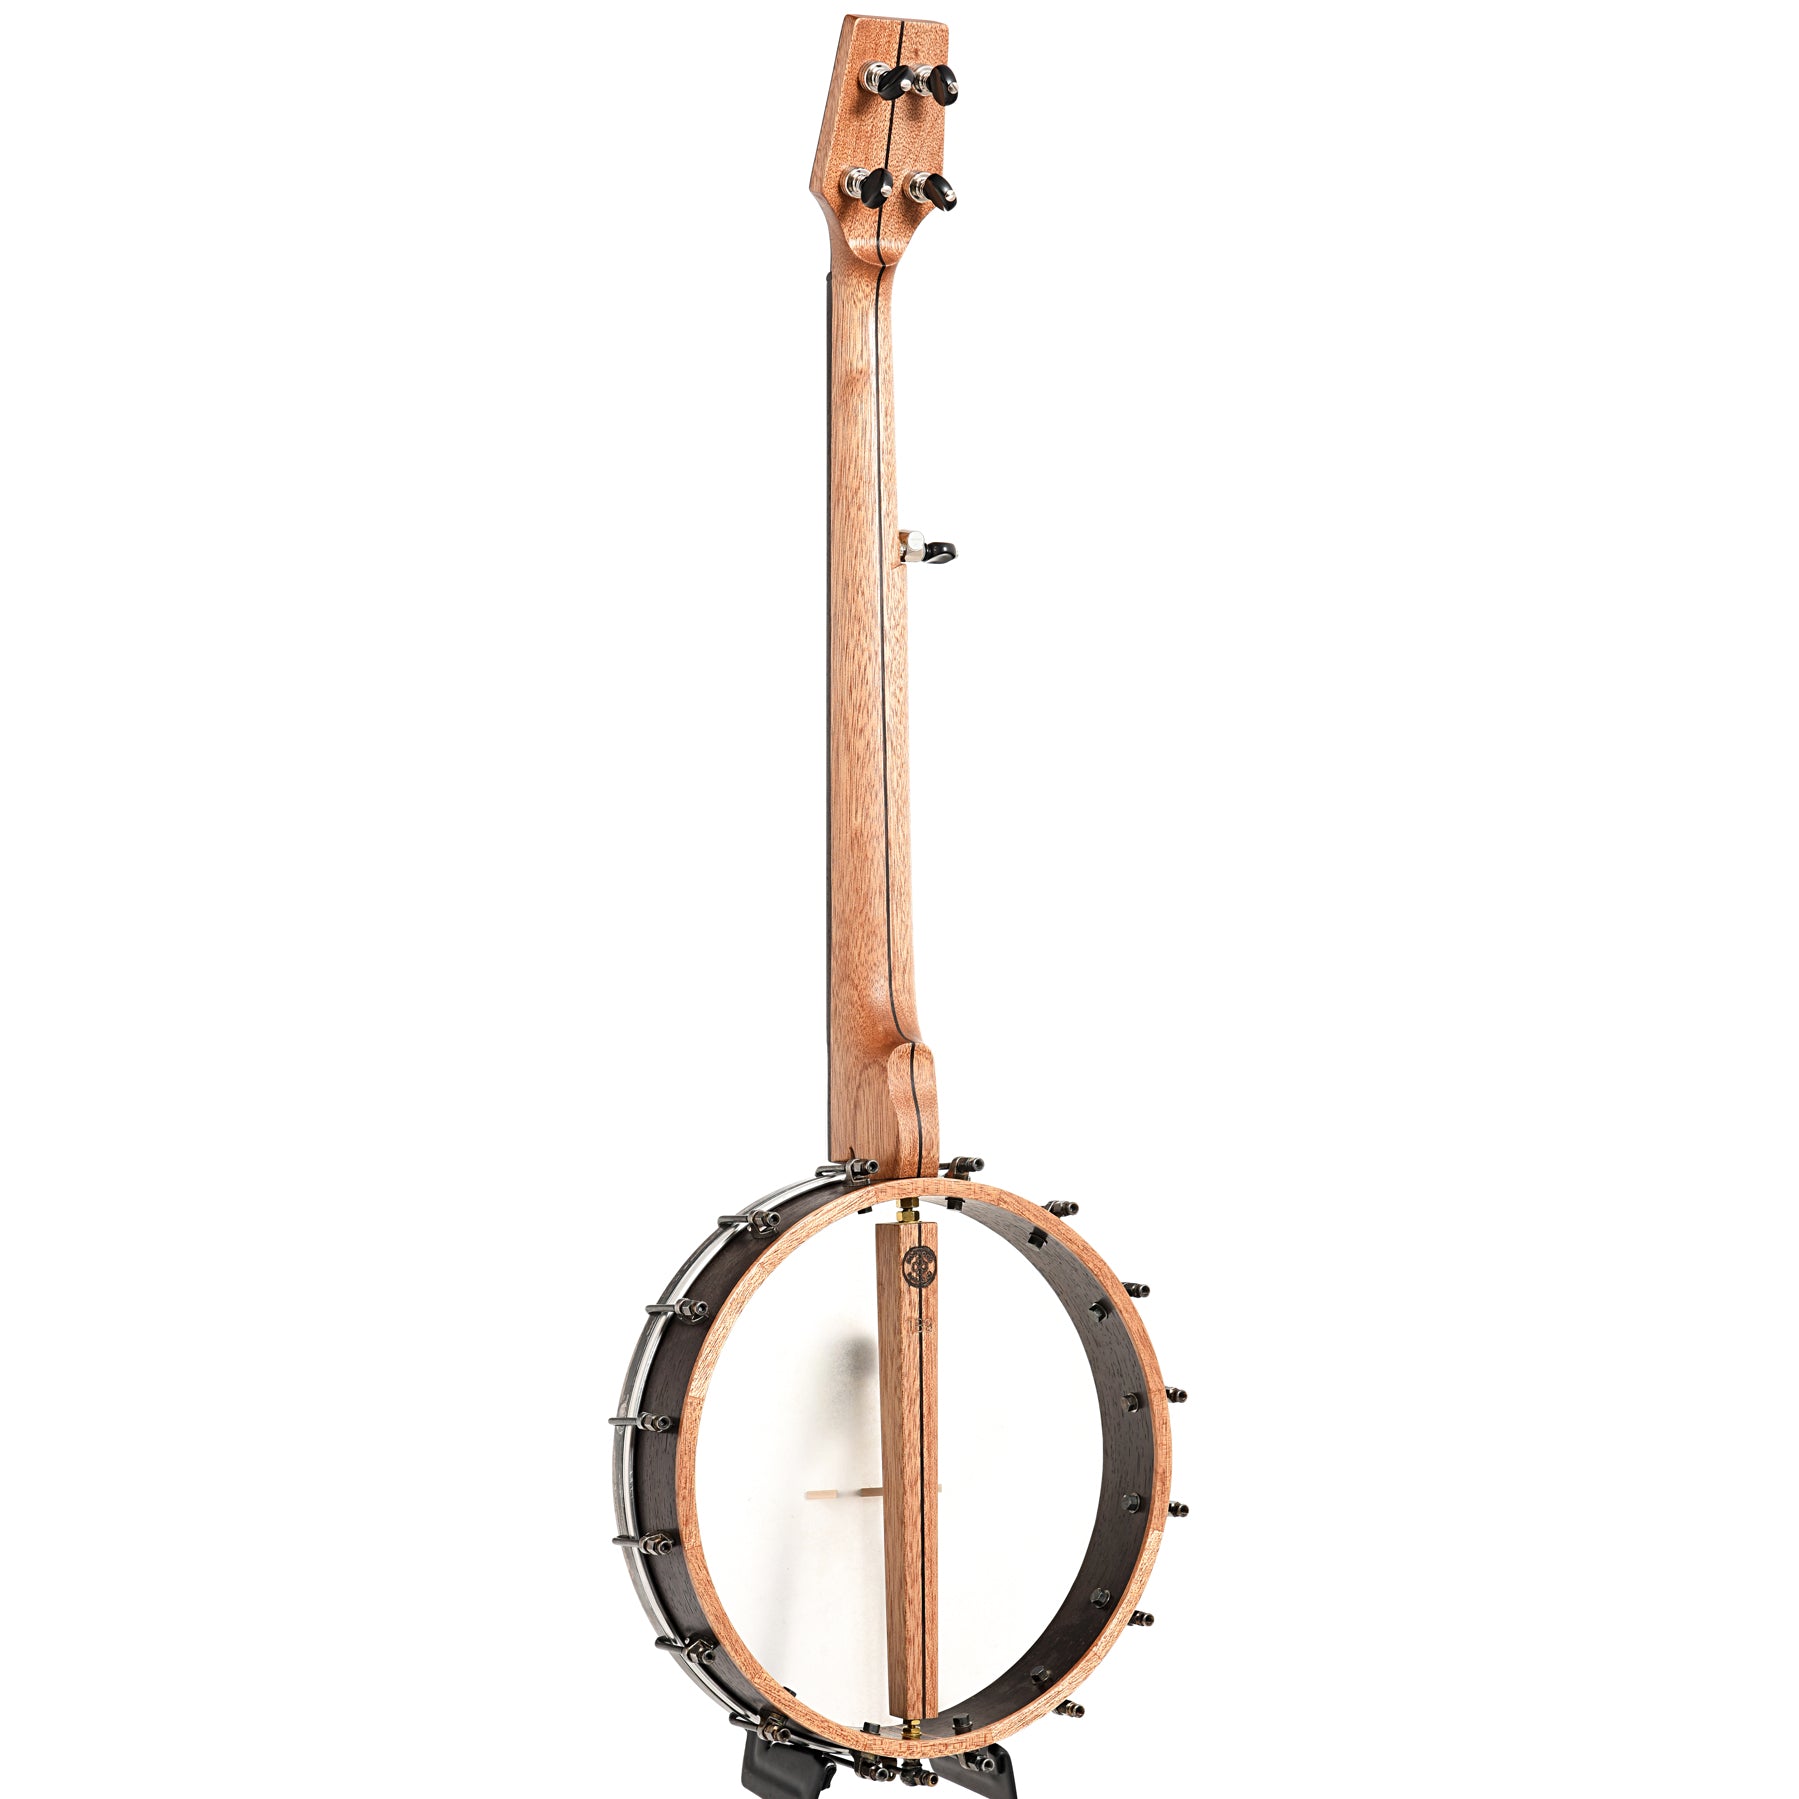 Image 12 of Dogwood Banjo Co. 12" Openback Banjo, No. 189, with Gigbag - SKU# DW189 : Product Type Open Back Banjos : Elderly Instruments